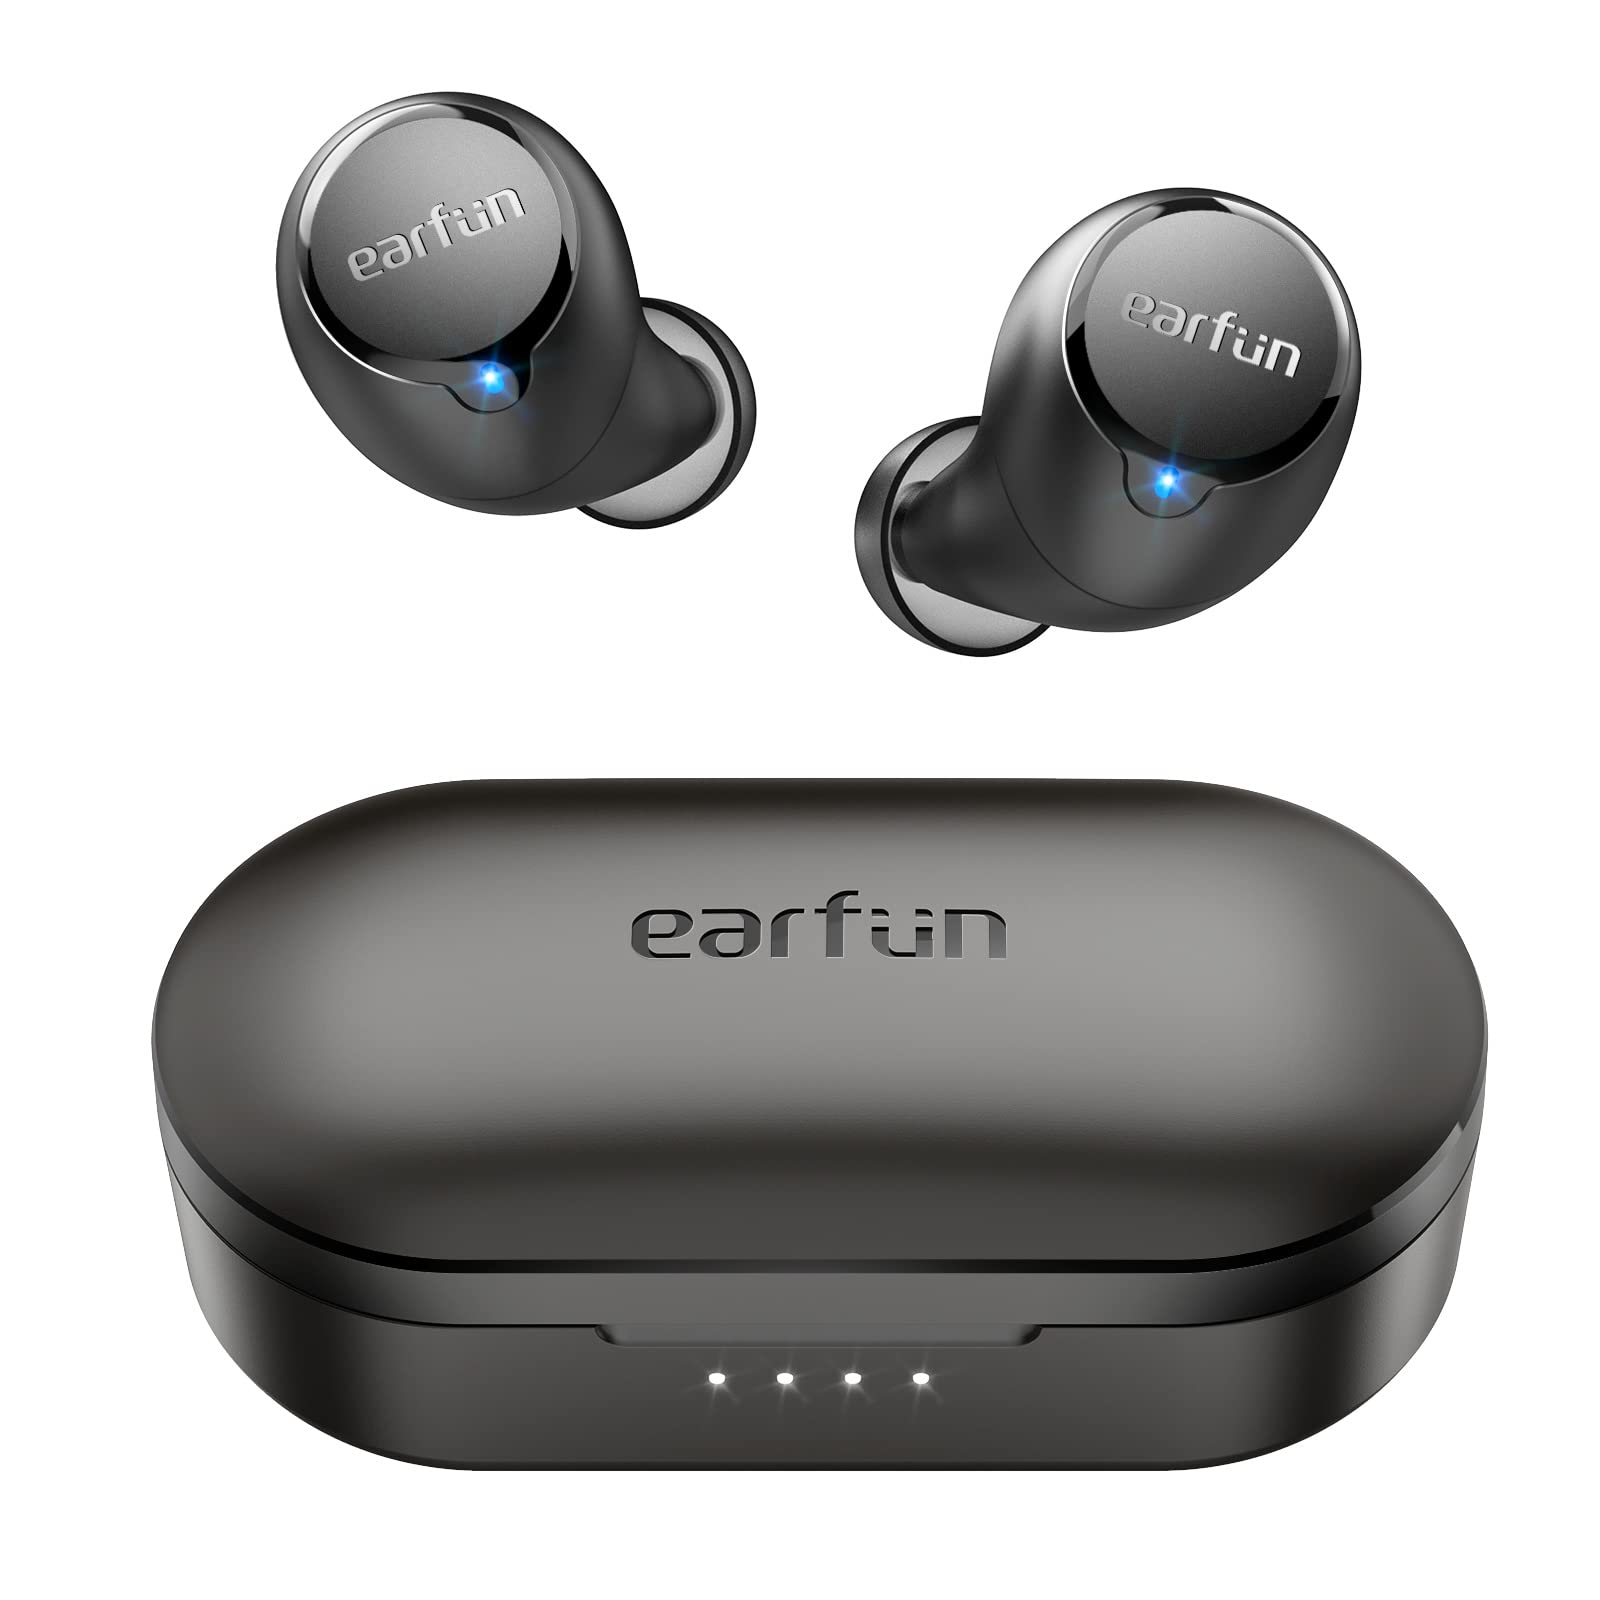  EarFun 無料の 1S ワイヤレスイヤホン、[2023 バージョン] 4 マイク ENC Bluetooth 5.0 イヤホン、7mm コンポジットドライバー、カスタム EQ 用アプリ、汗止め...